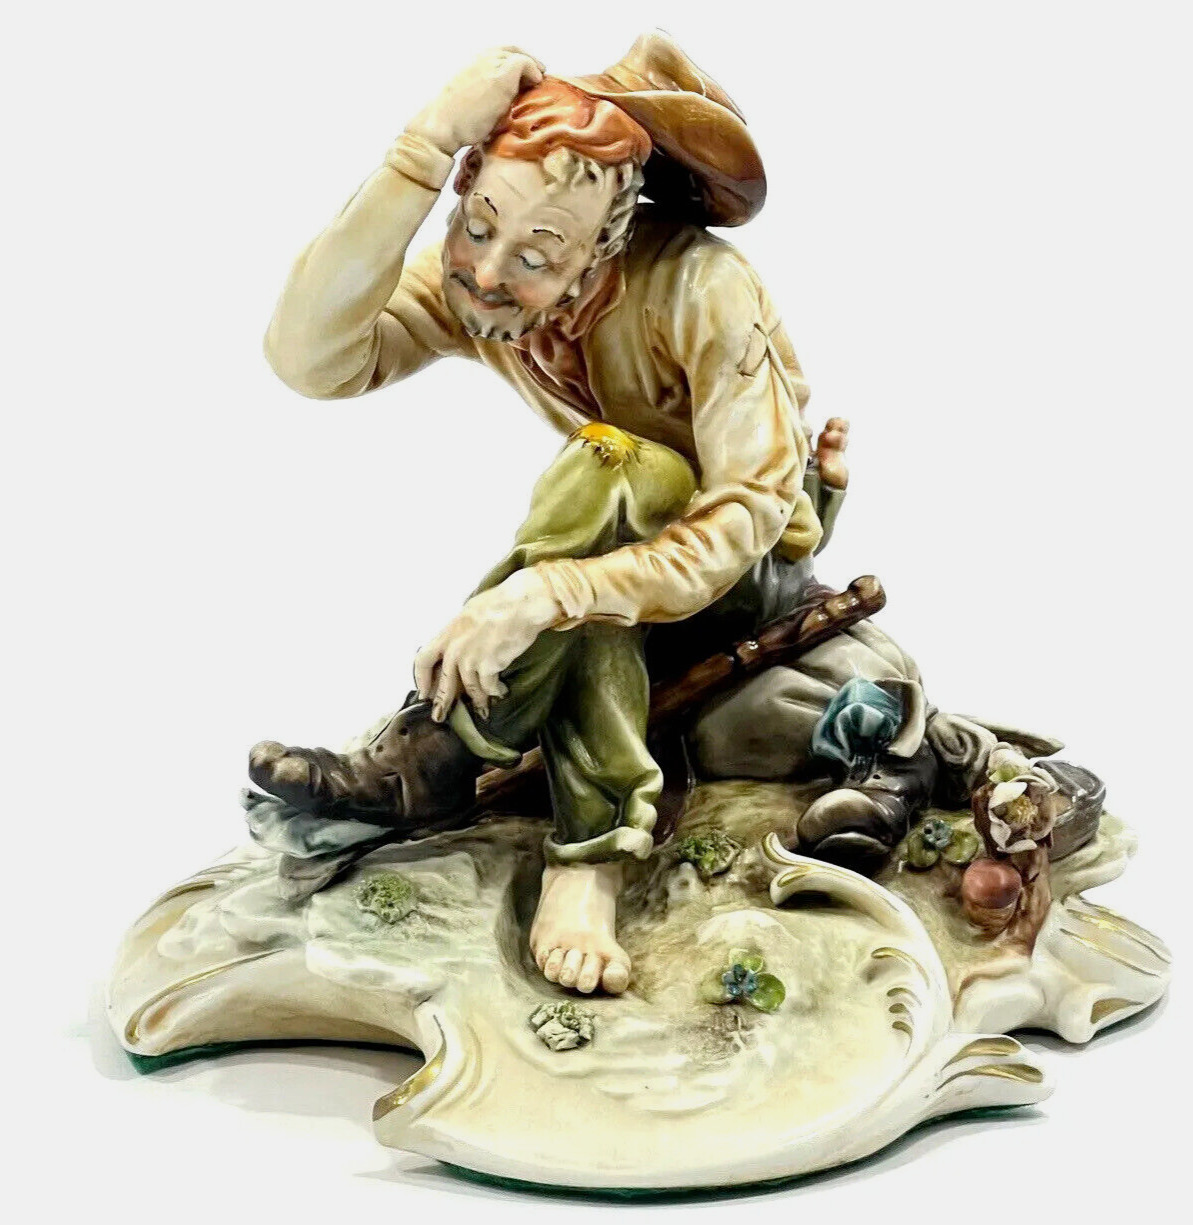 Antonio Borsato Cowboy Figure Decorative Collectible Art Foot Loose Milano Italy